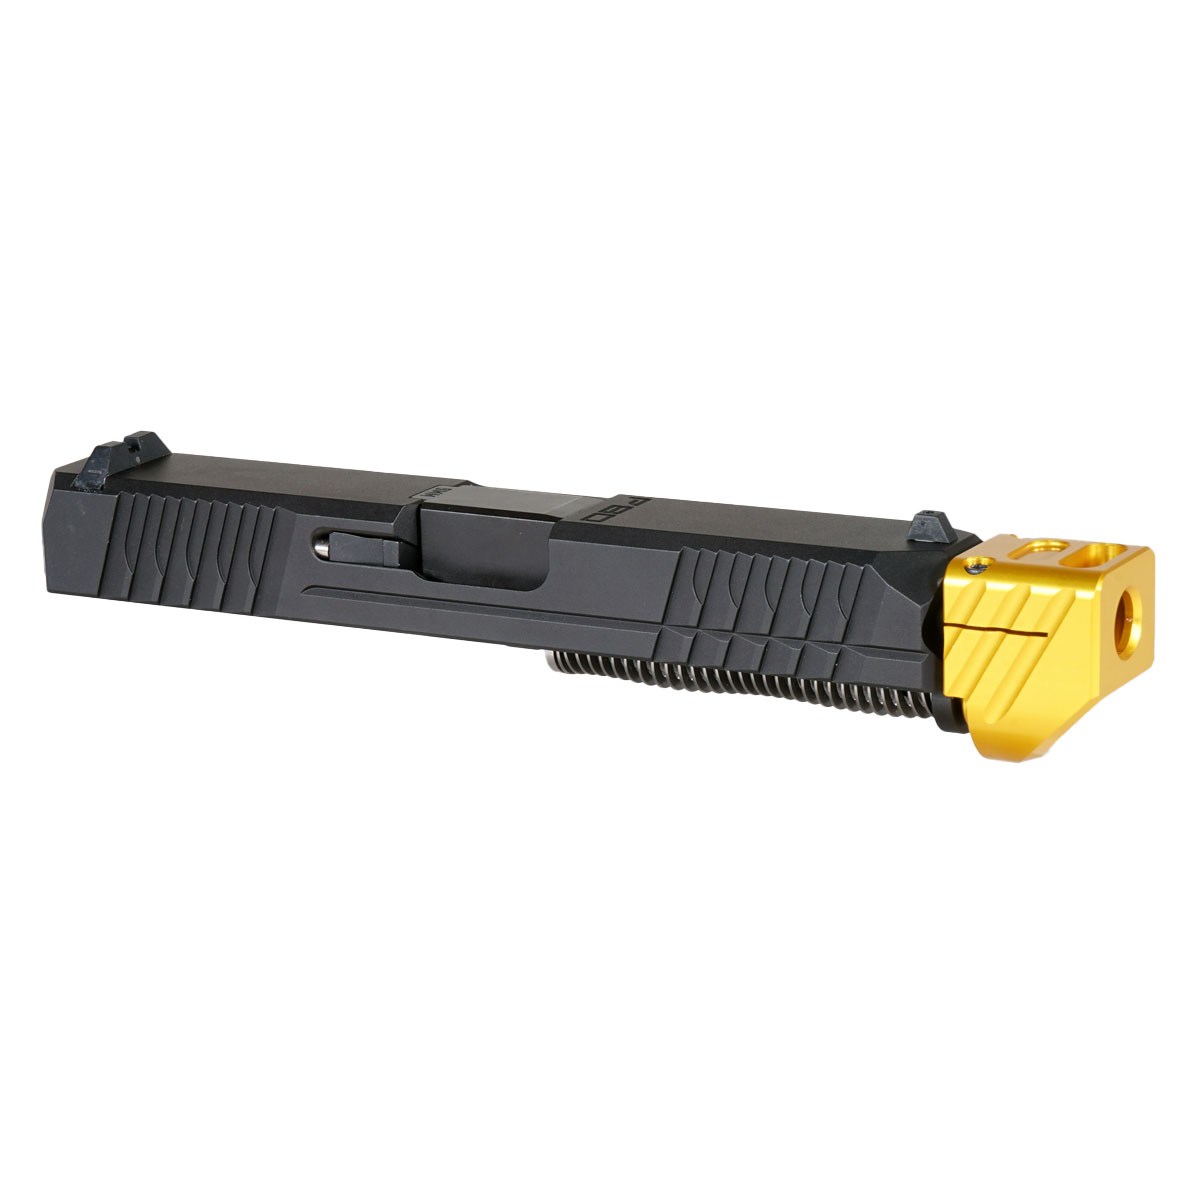 DDS 'Paracausal V2 w/ Gold Compensator' 9mm Complete Slide Kit - Glock 19 Gen 1-3 Compatible